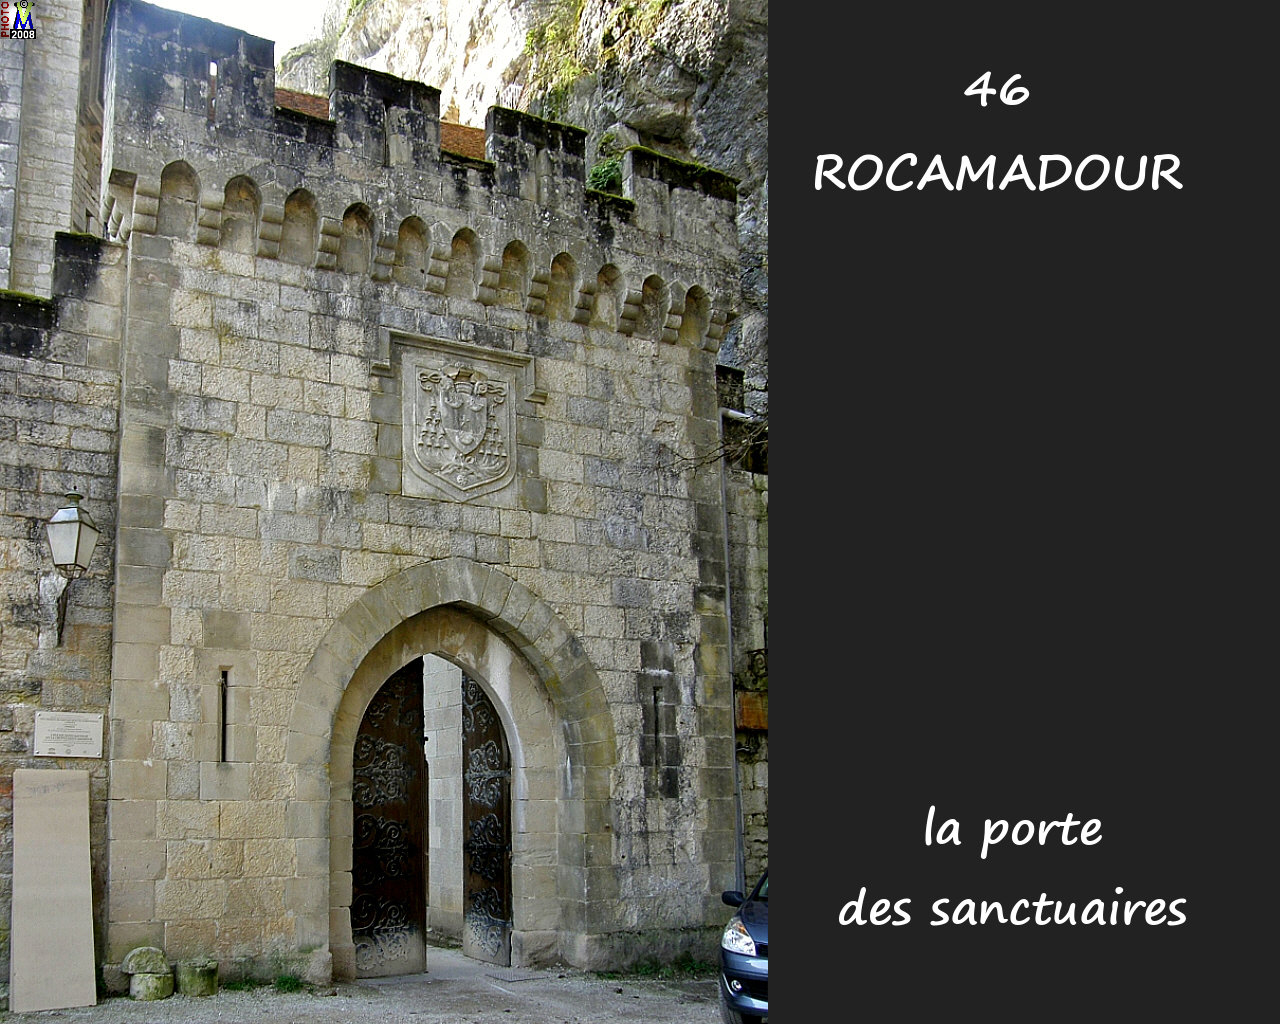 46ROCAMADOUR_sanctuaires_100.jpg